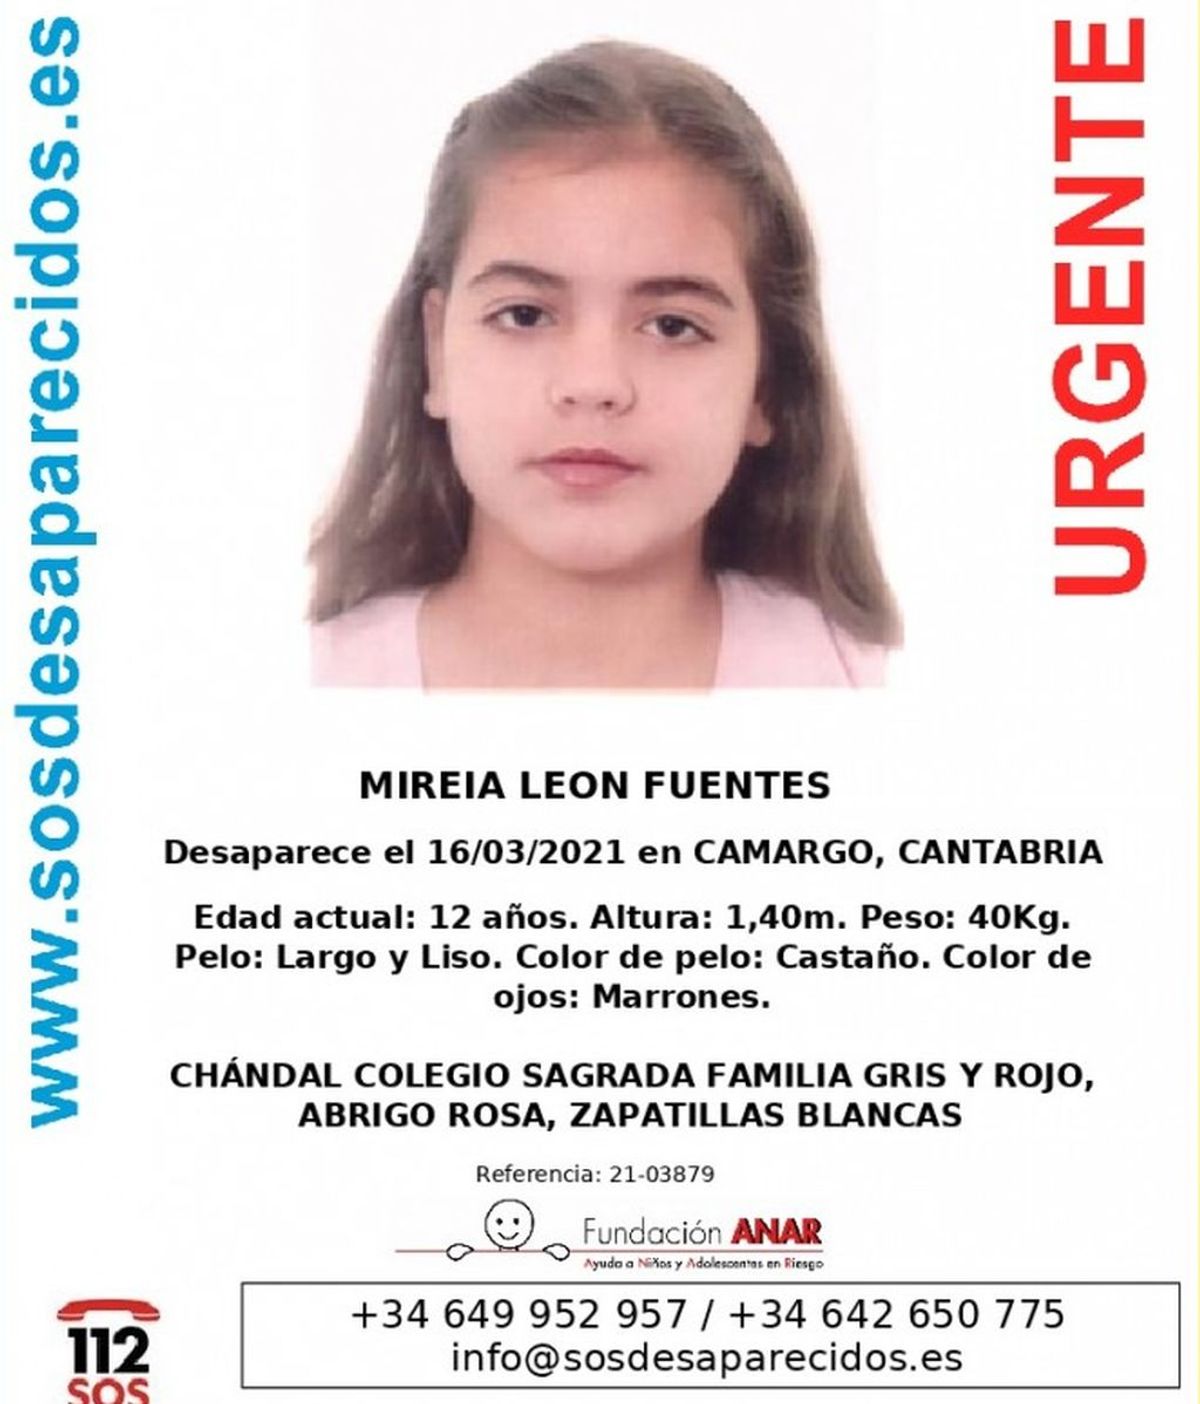 Buscan a una niña de 12 años desaparecida en Camargo (Cantabria) el pasado 16 de marzo